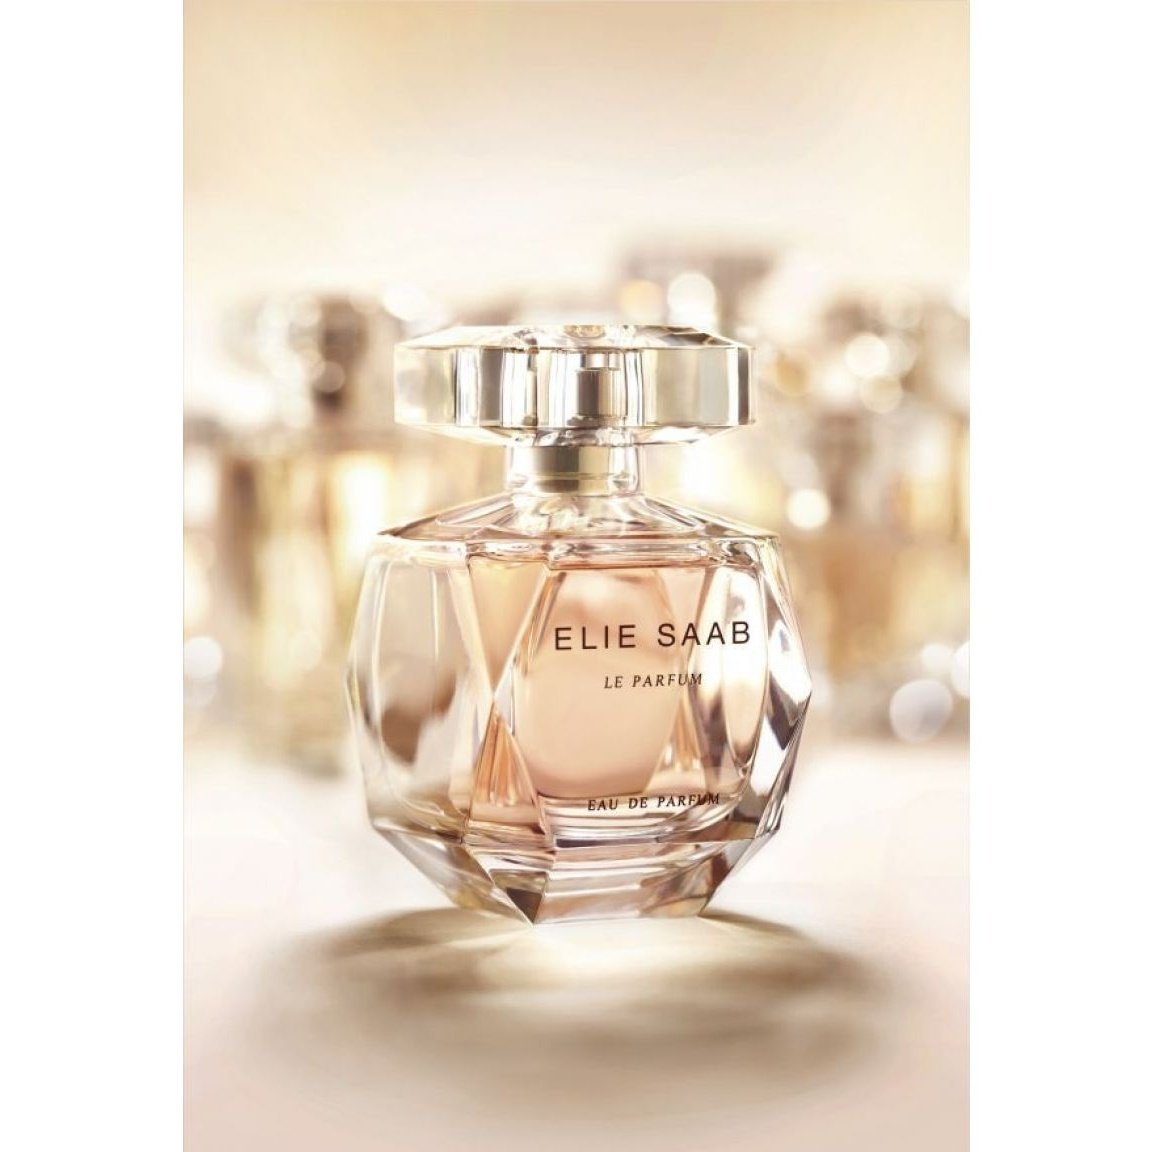 Elie Saab Le Parfum EDP 90ml | Discontinued Perfumes at Carsha 